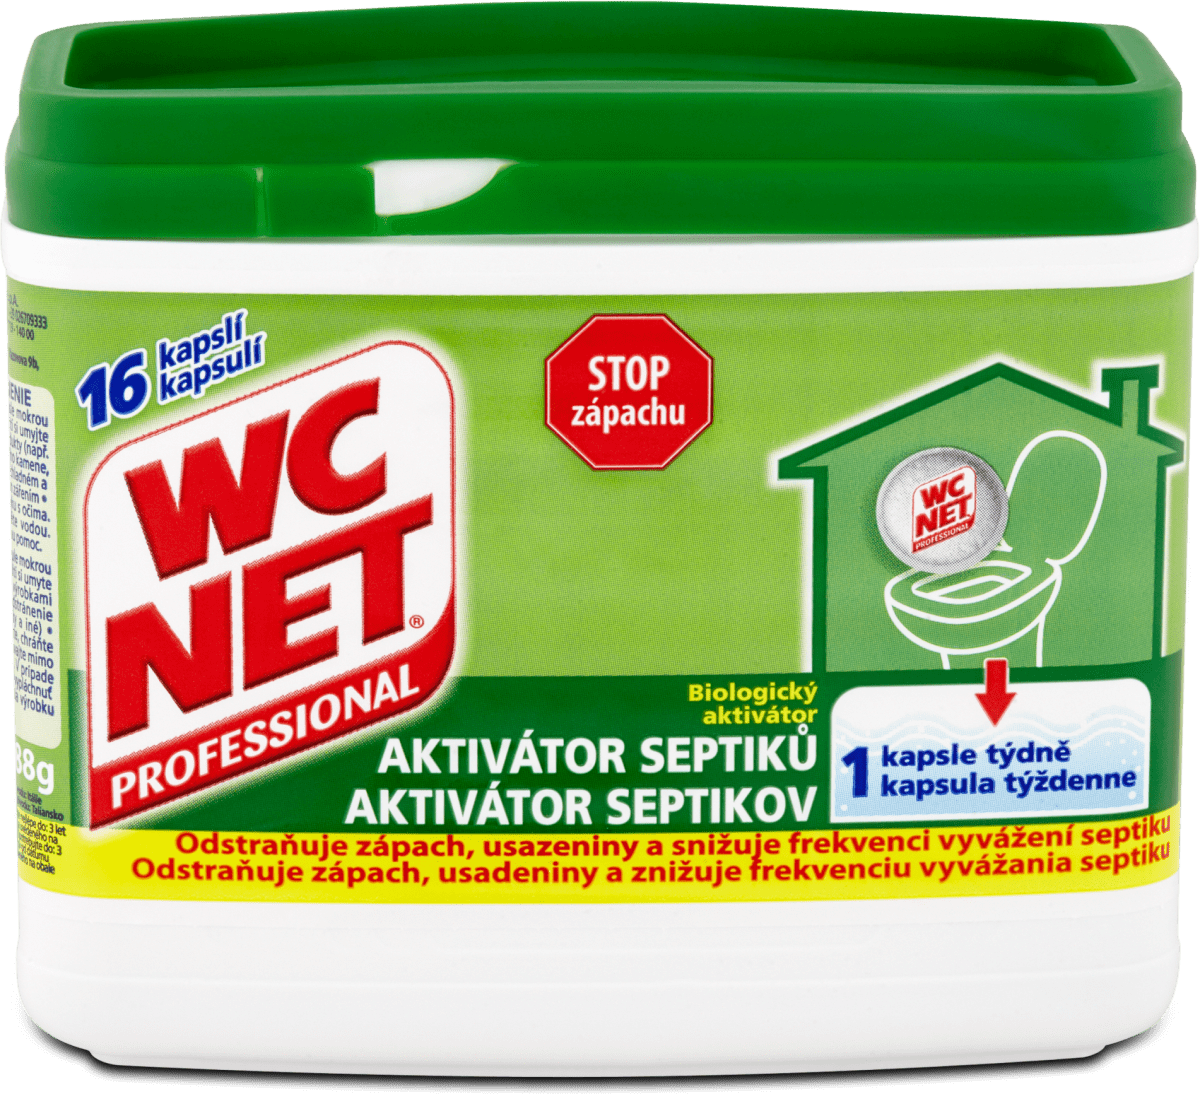 WC NET biologický aktivátor septiků, 16 ks